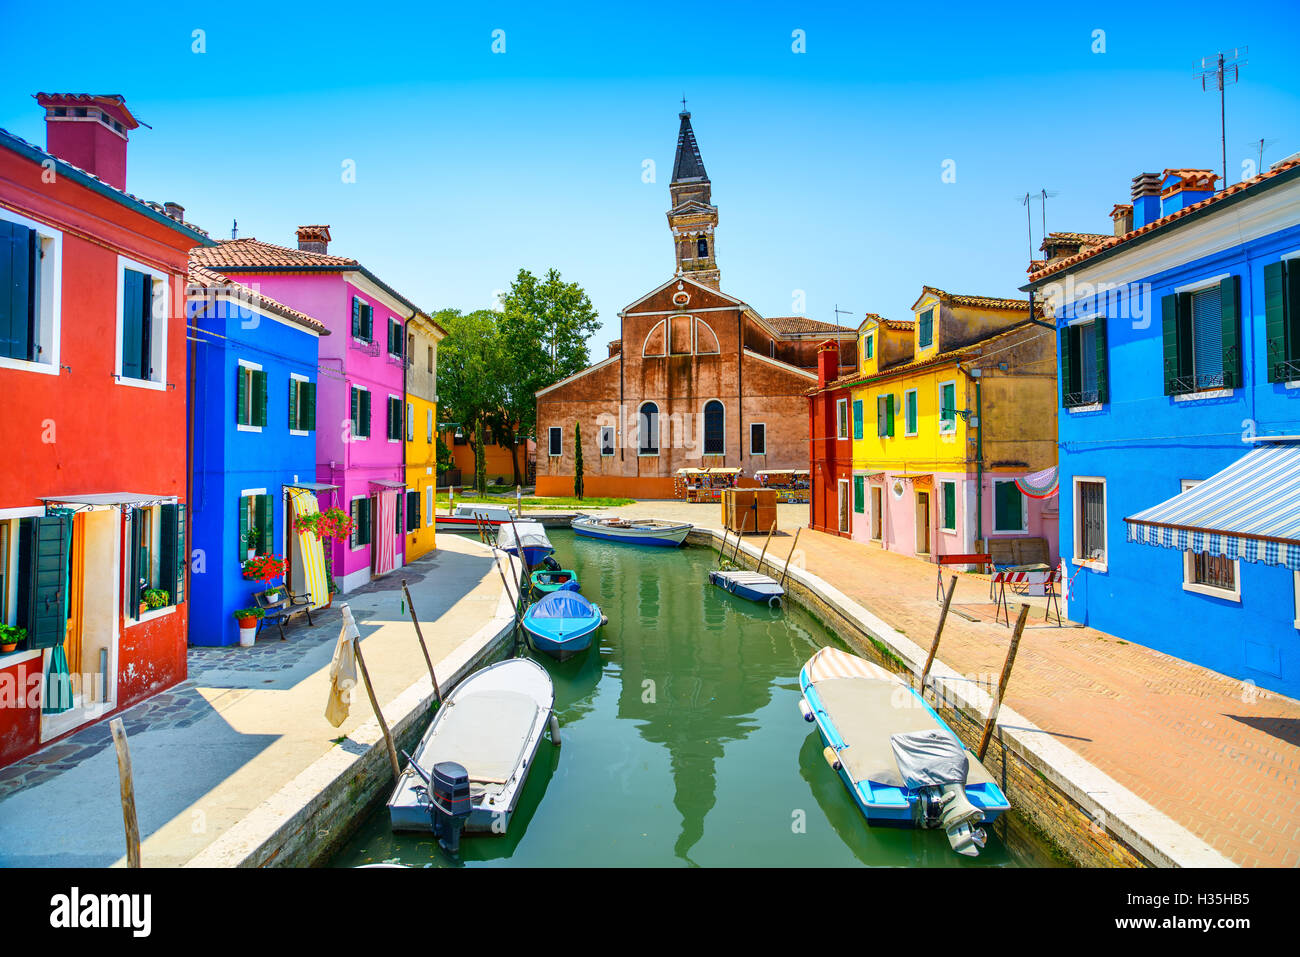 Wahrzeichen von Venedig, Burano Insel Kanal, bunten Häusern Kirche und Boote, Italien. Langzeitbelichtung Fotografie Stockfoto